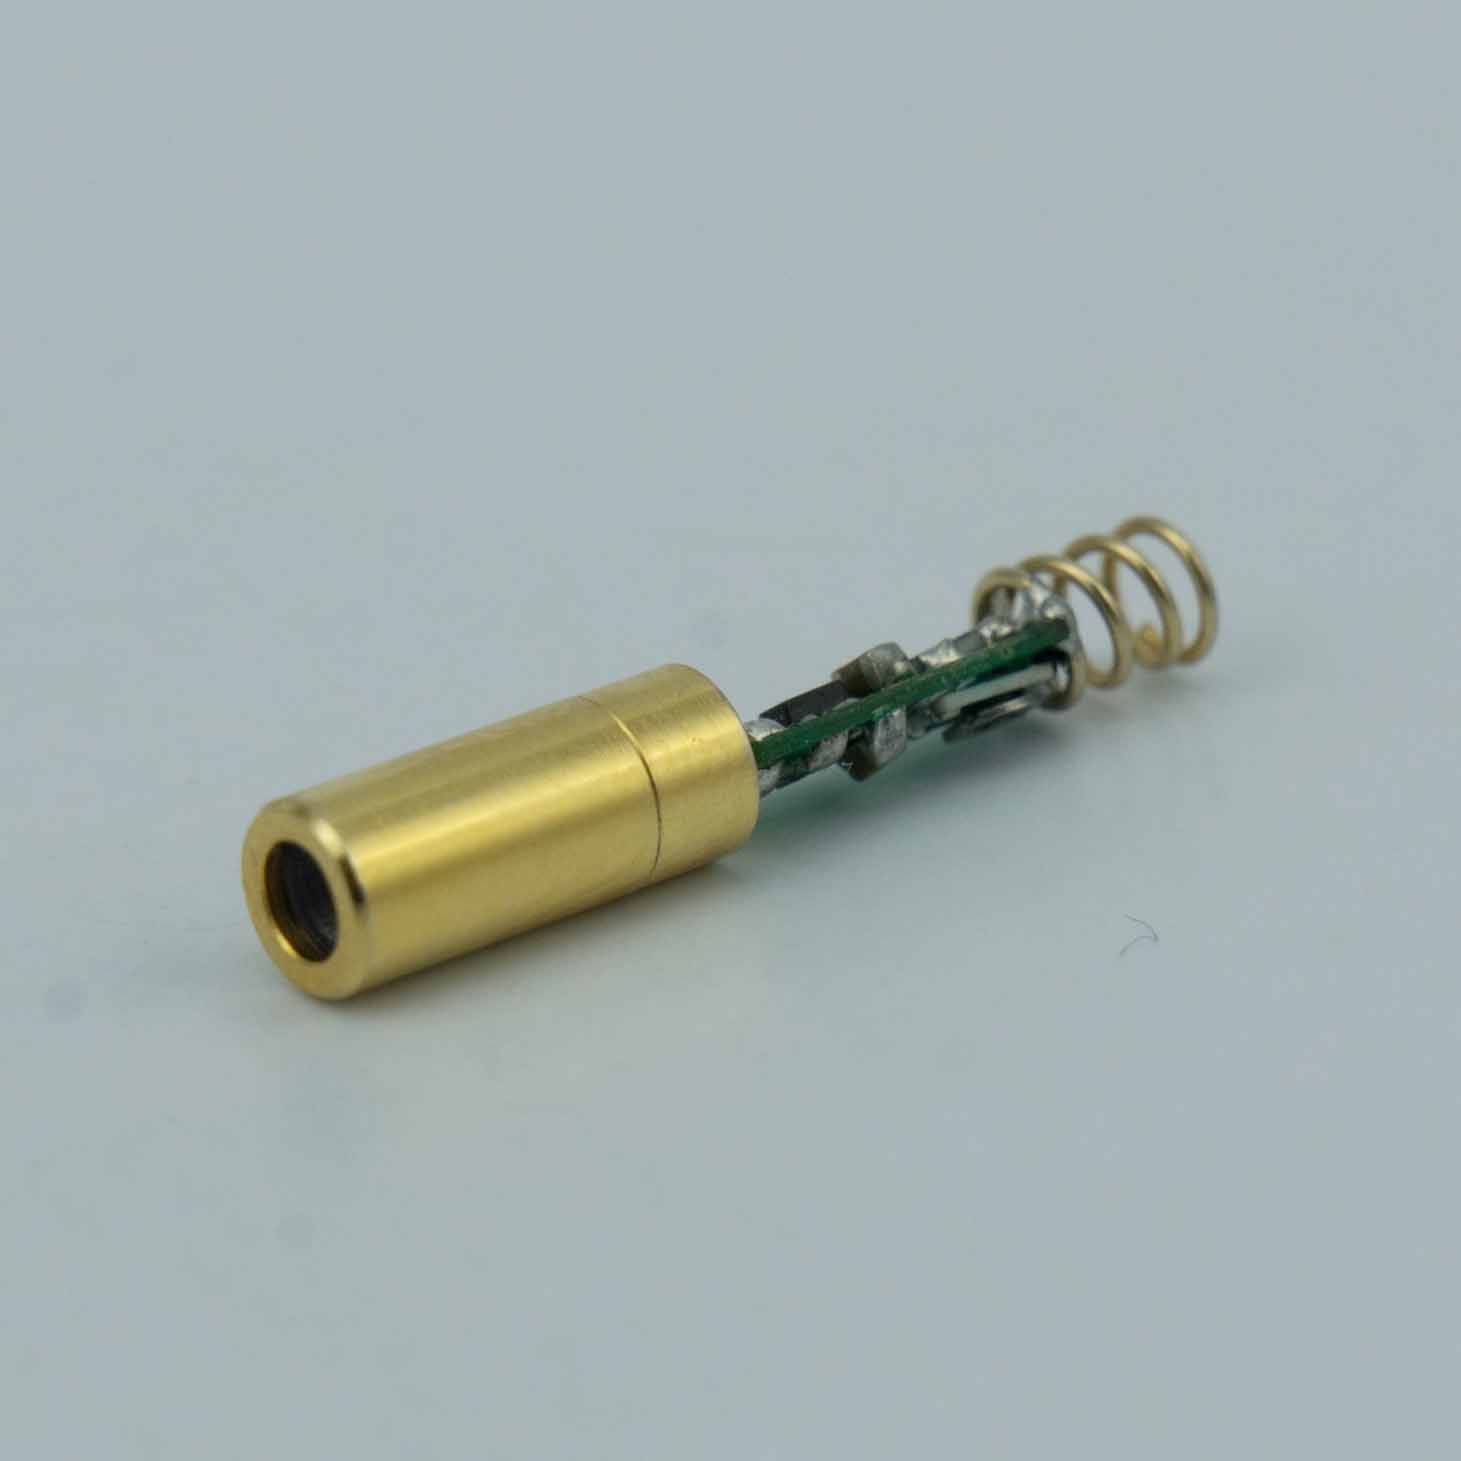 Миниатюрный лазерный модуль Φ4mm 520nm 5mw Green Dot Laser для лазерных устройств наведения Gun Laser Grips